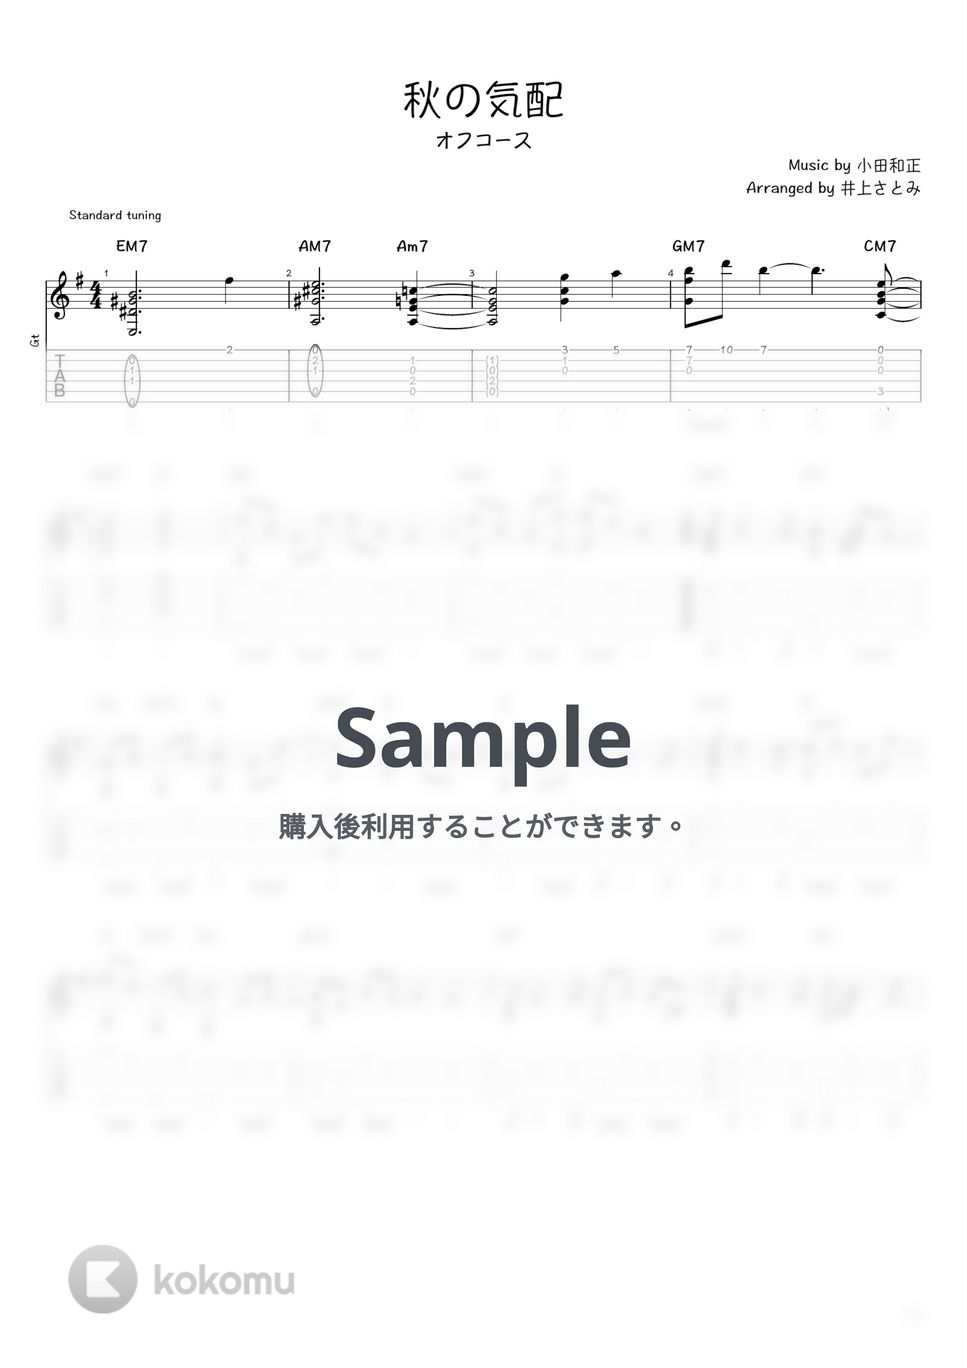 オフコース - 秋の気配 (ソロギター / タブ譜) by 井上さとみ